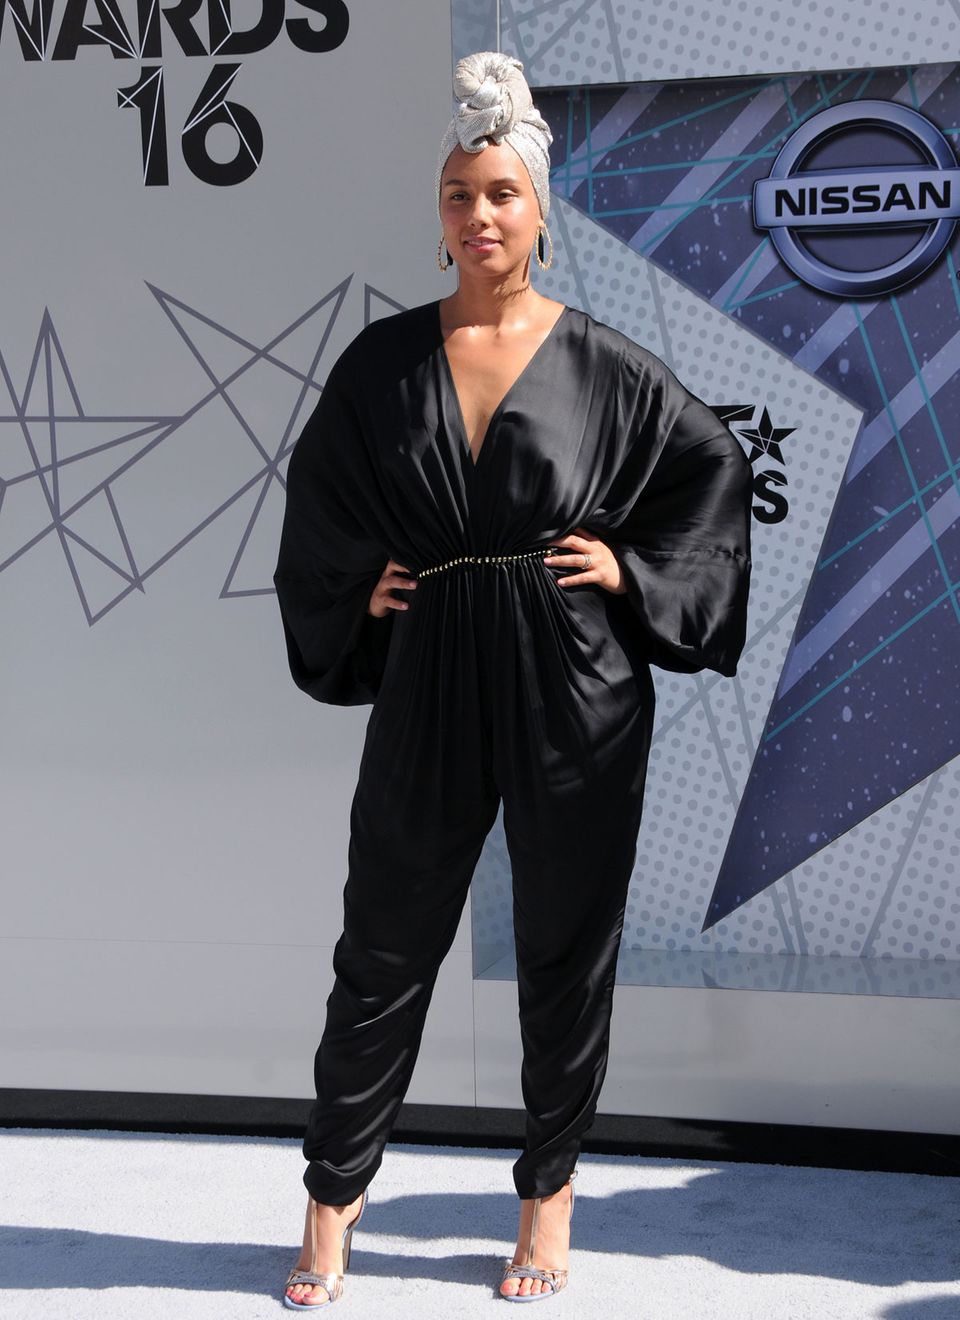 Wunderschön: Mit Charisma und Ausstrahlung zeigt sich Alicia Keys auf den "Bet Awards 2016" ungeschminkt und stylisch.